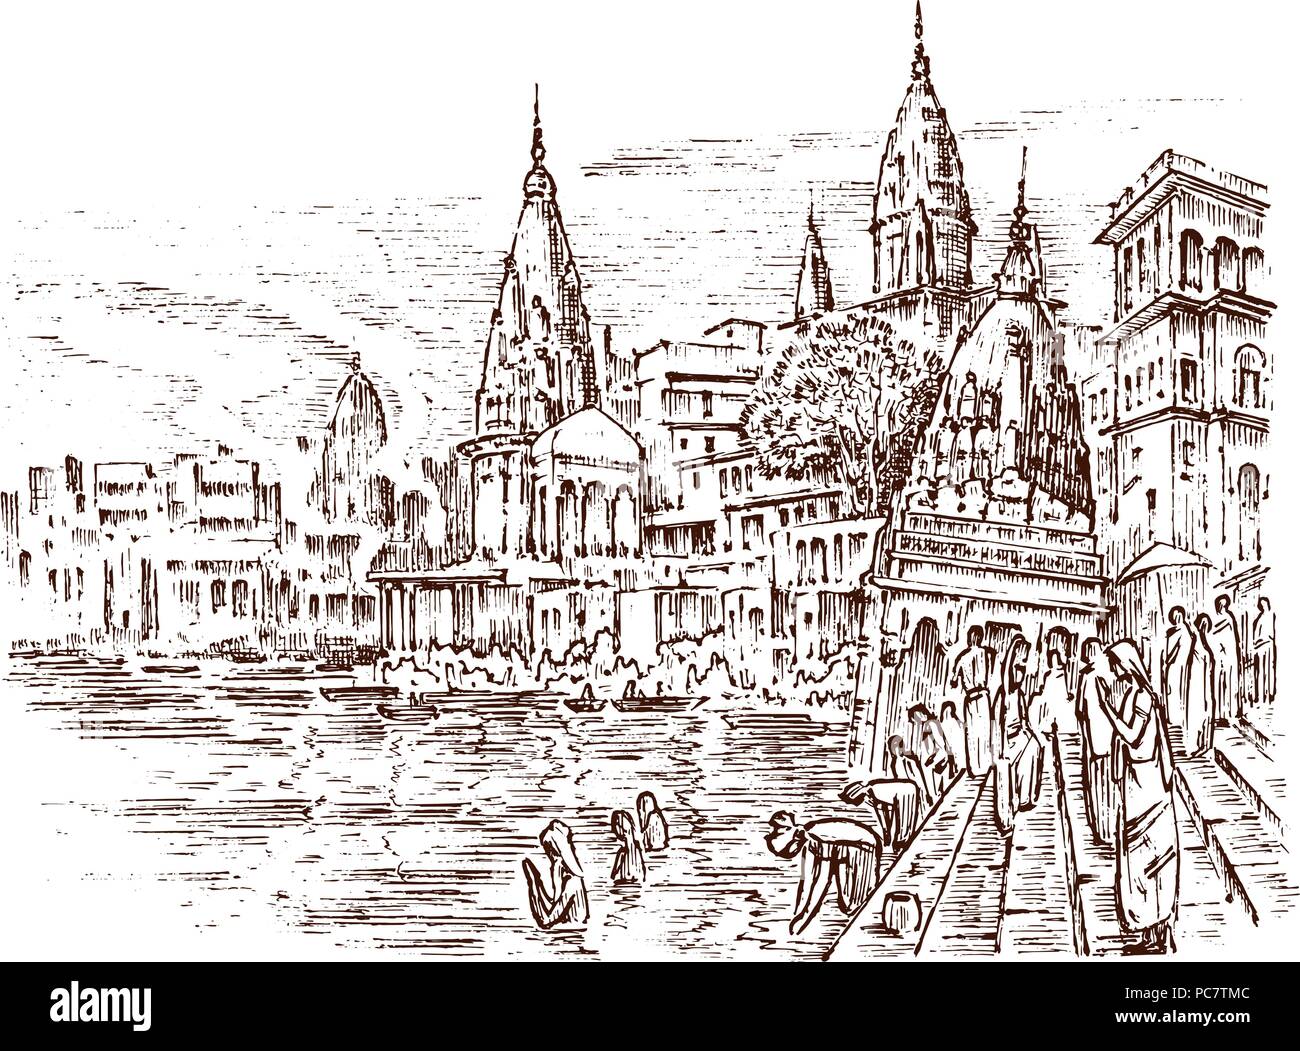 Historische Architektur mit Gebäuden, Perspektive betrachten. Landschaft in der Stadt Varanasi in Indien. Ganges graviert Hand in alte Skizze und Monochrom vintage Stil gezeichnet. Reisen Postkarte. Stock Vektor